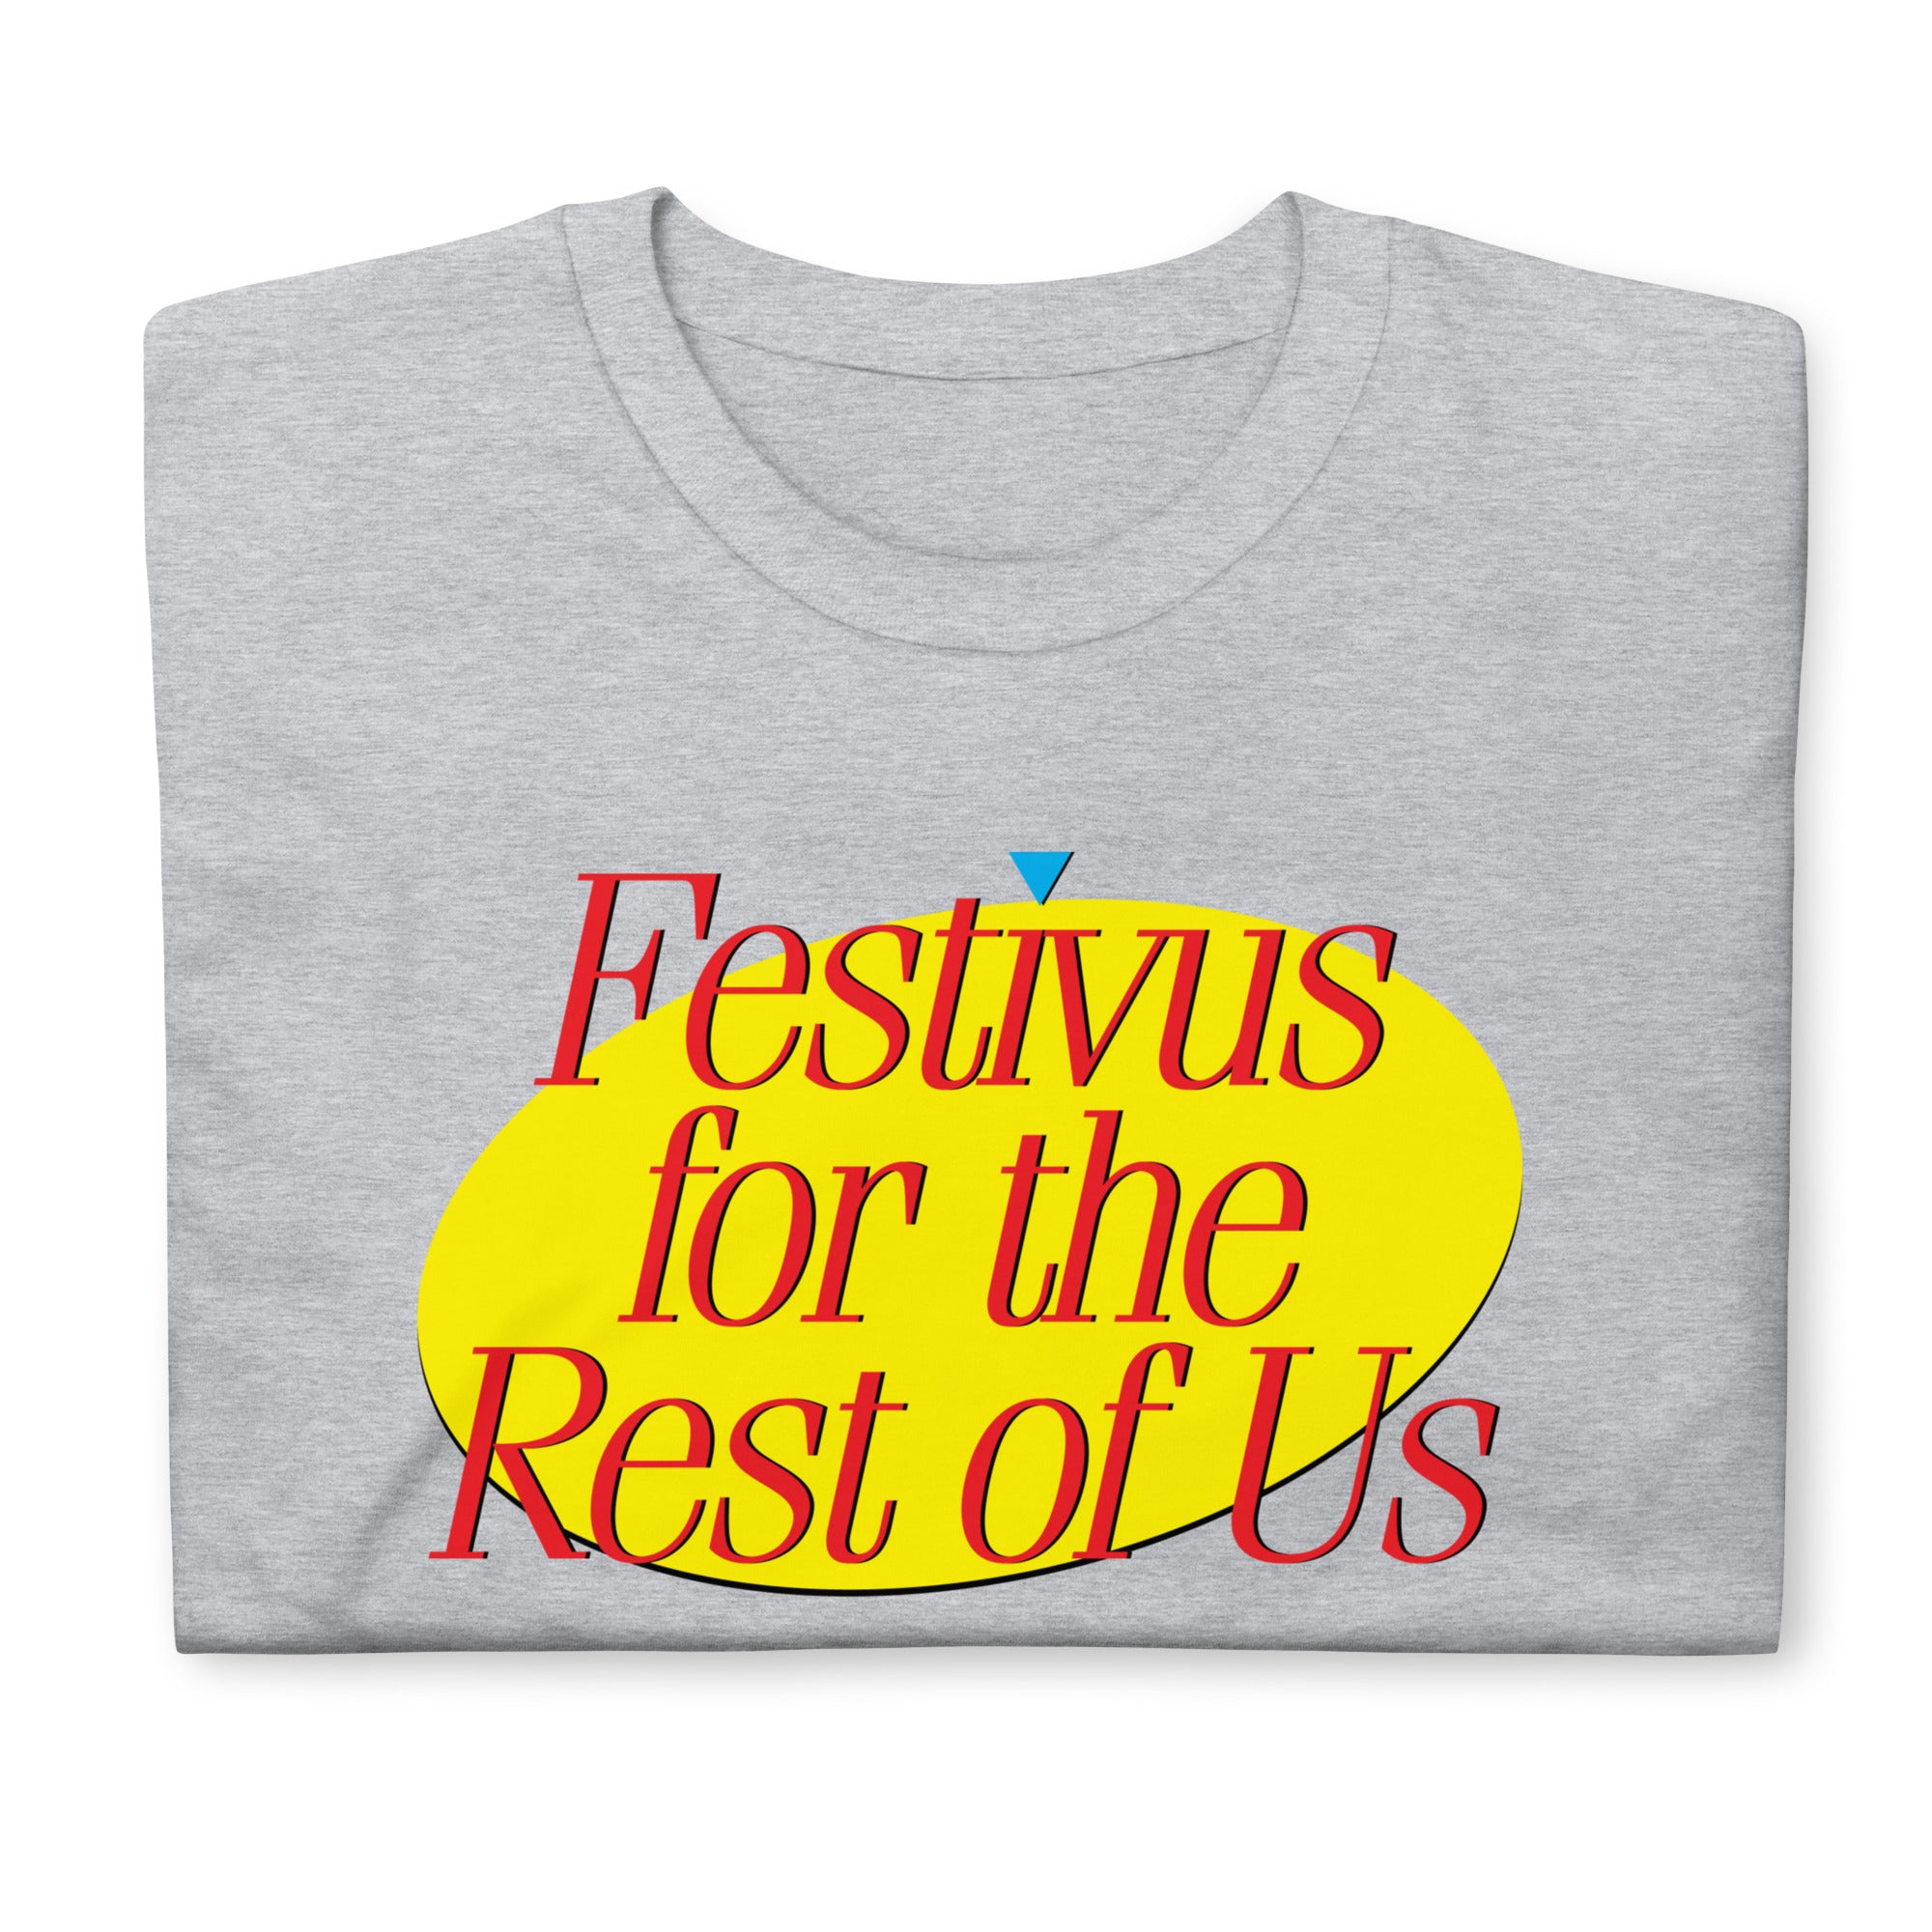 Festivus for the Rest of UsT-Shirt